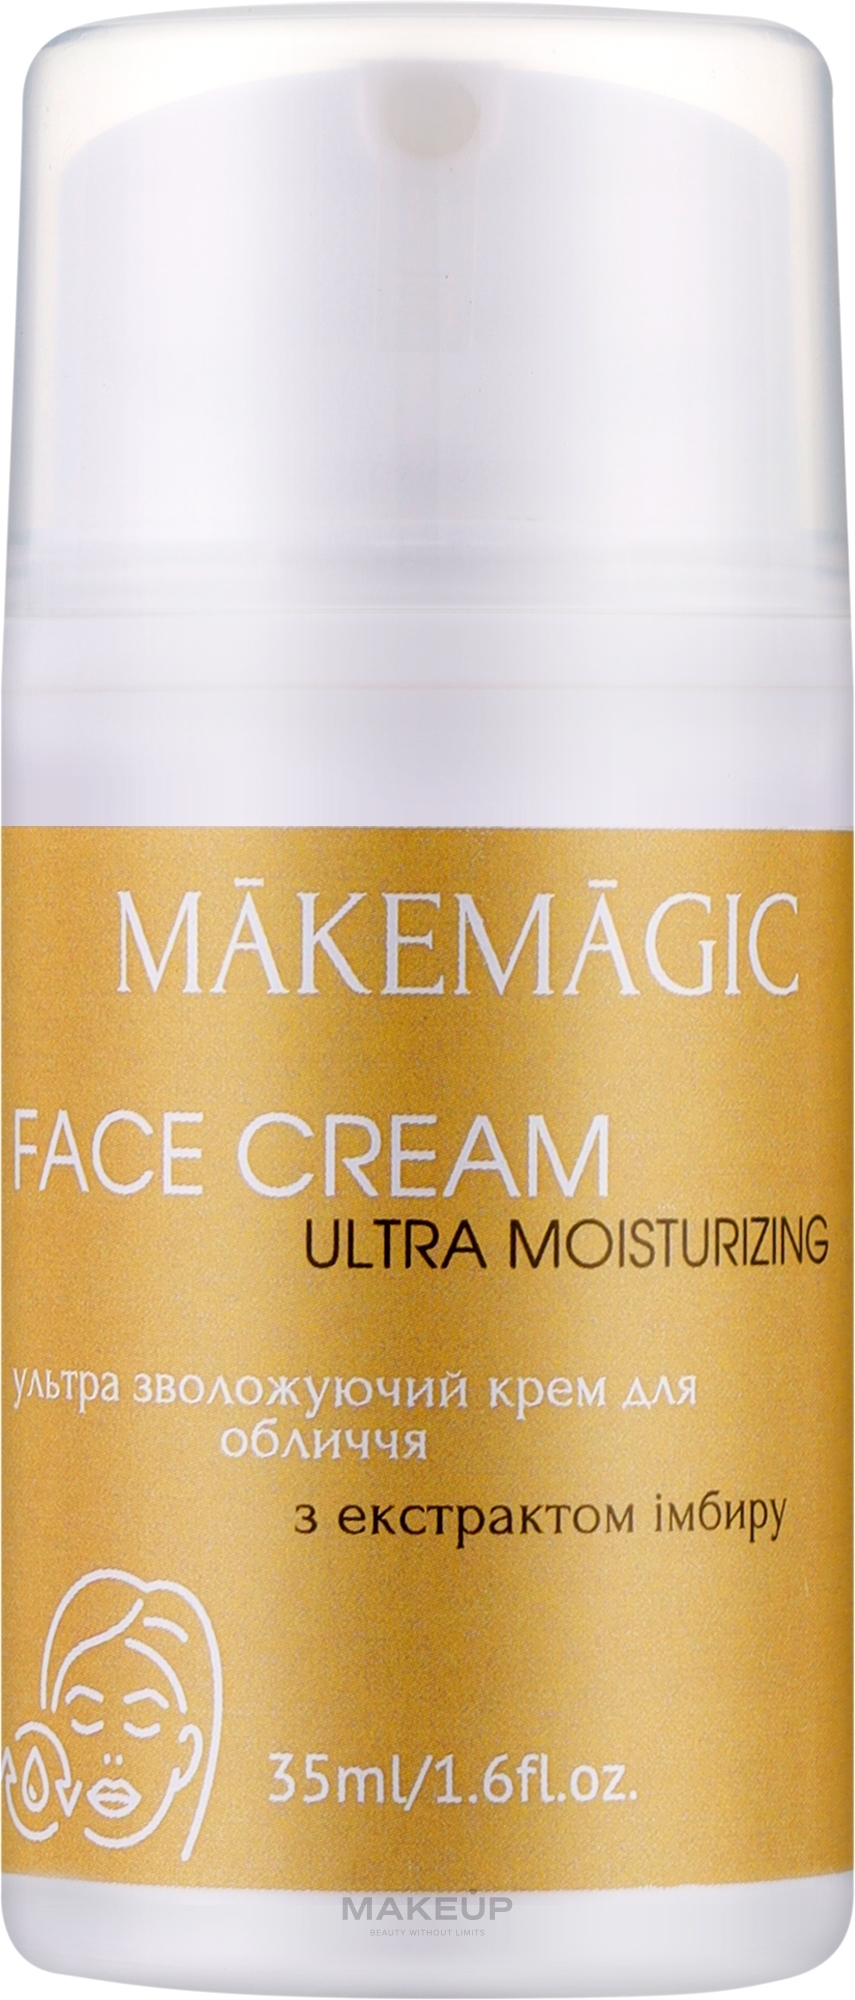 Ультраувлажняющий крем для лица с экстрактом имбиря - Makemagic Ultra Moisturizing Face Cream — фото 35ml